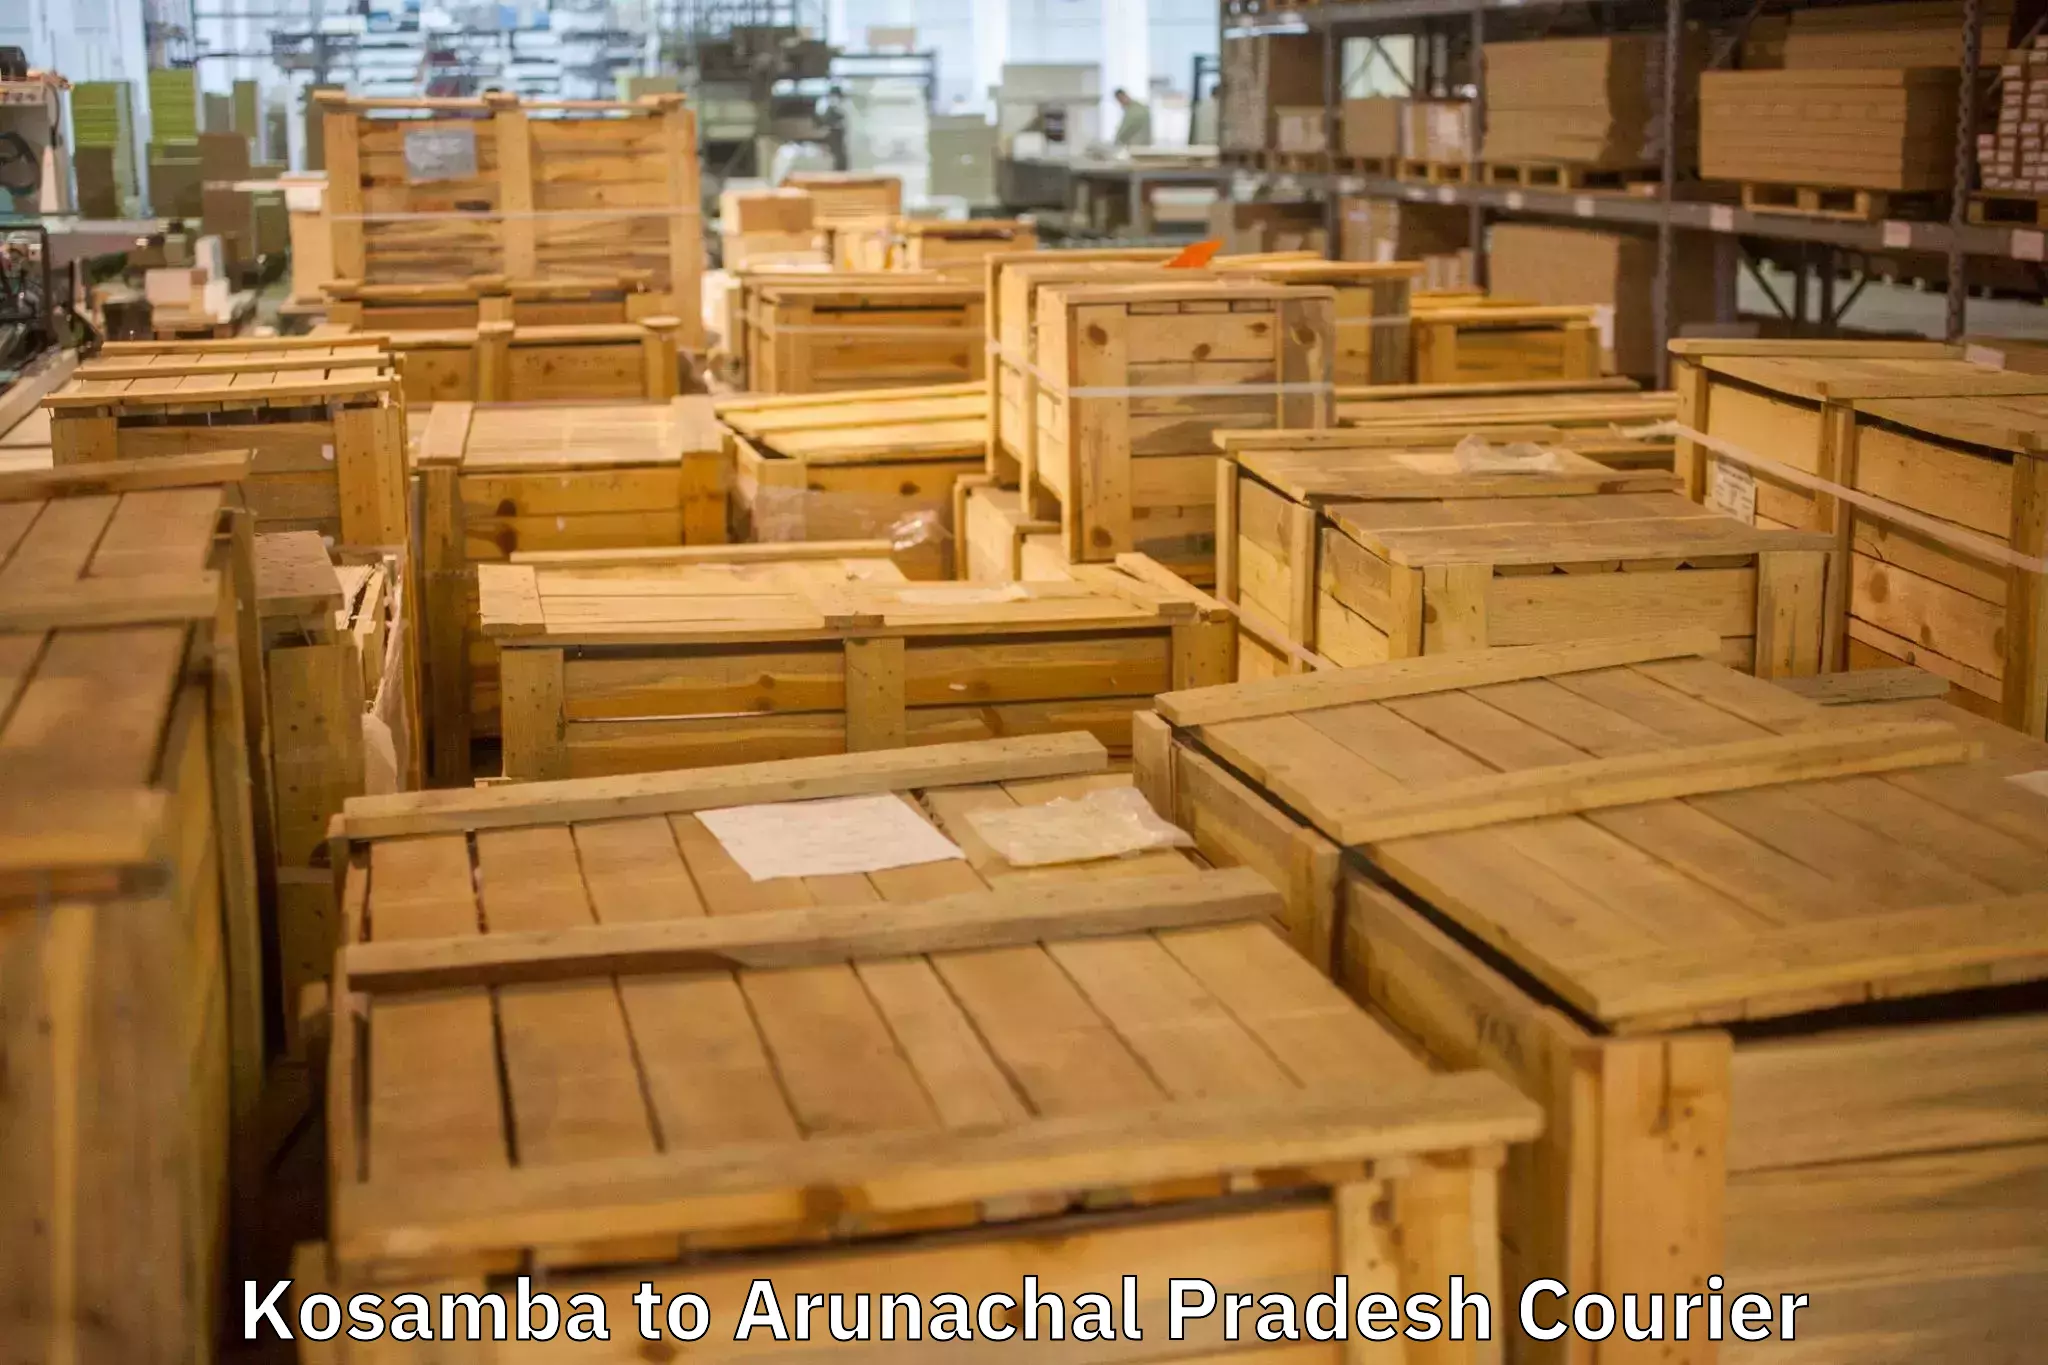 Reliable movers Kosamba to Arunachal Pradesh